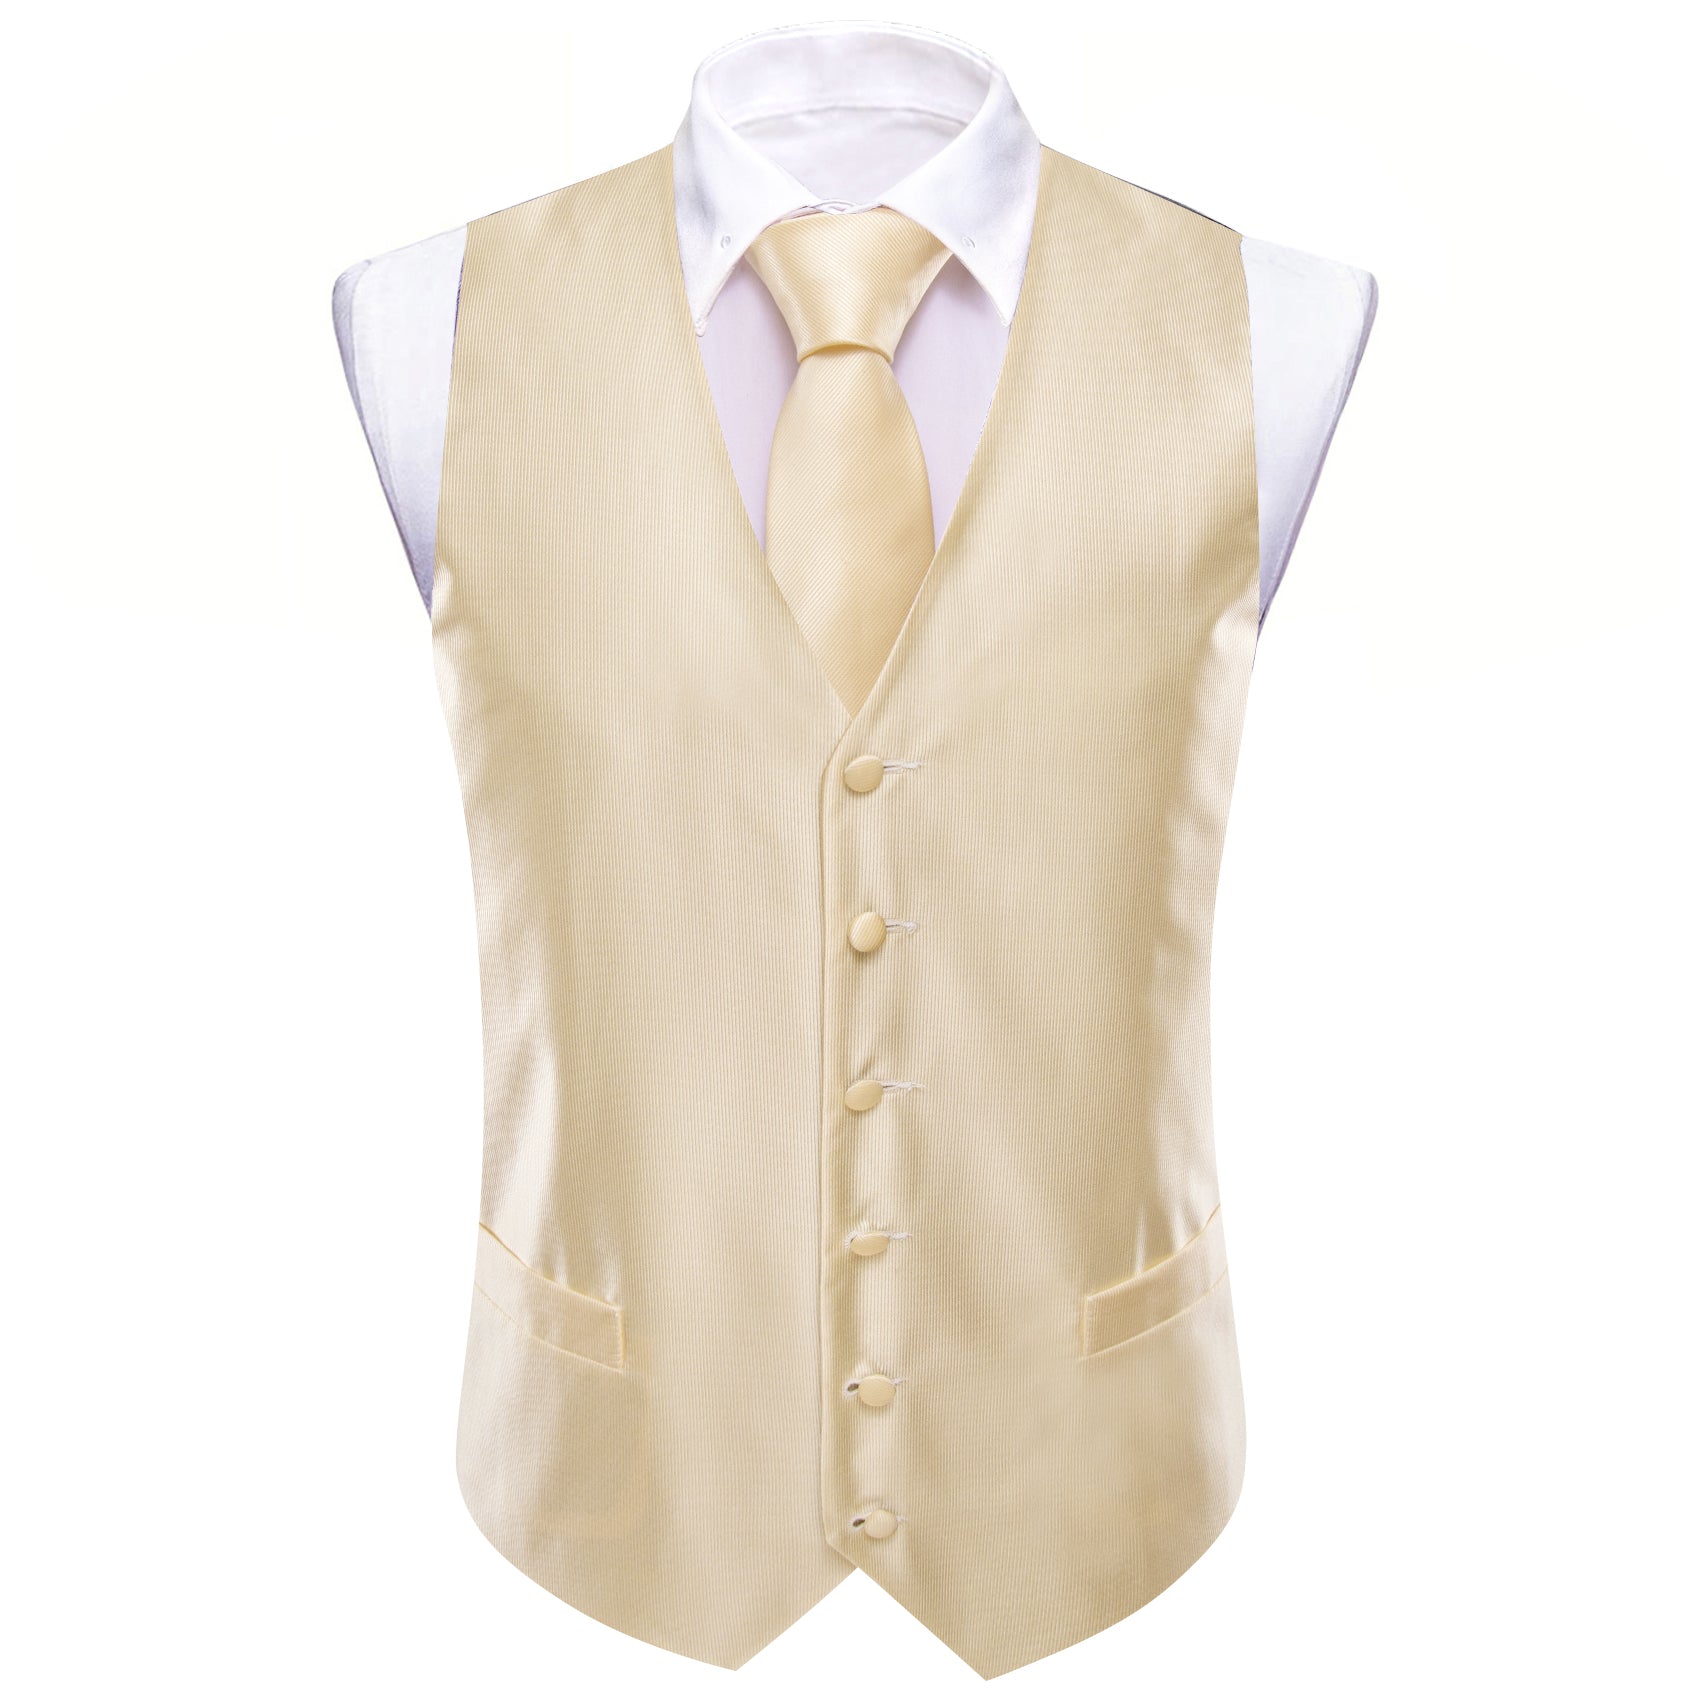 Cornsilk Solid Silk Vest Necktie Pocket Square Cufflinks Set